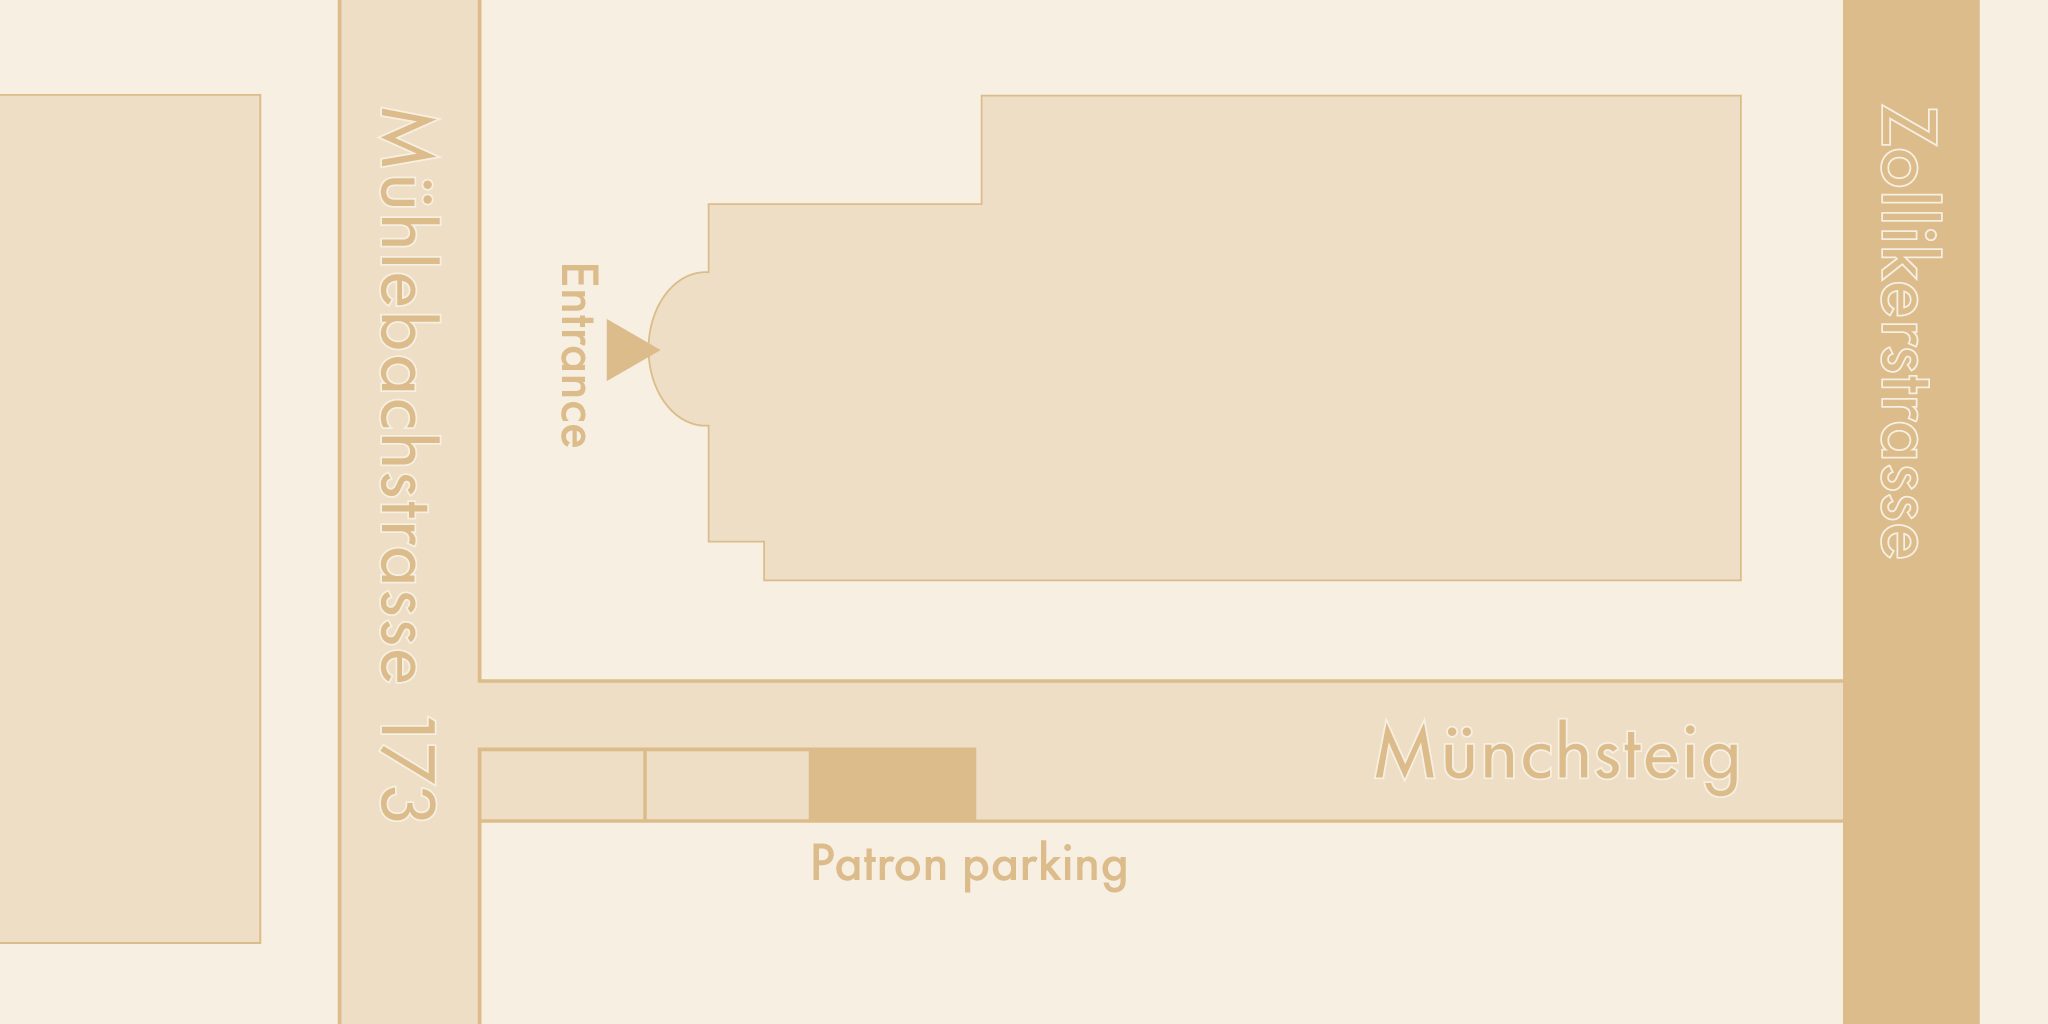 Parking - Patron parking in Münchsteig